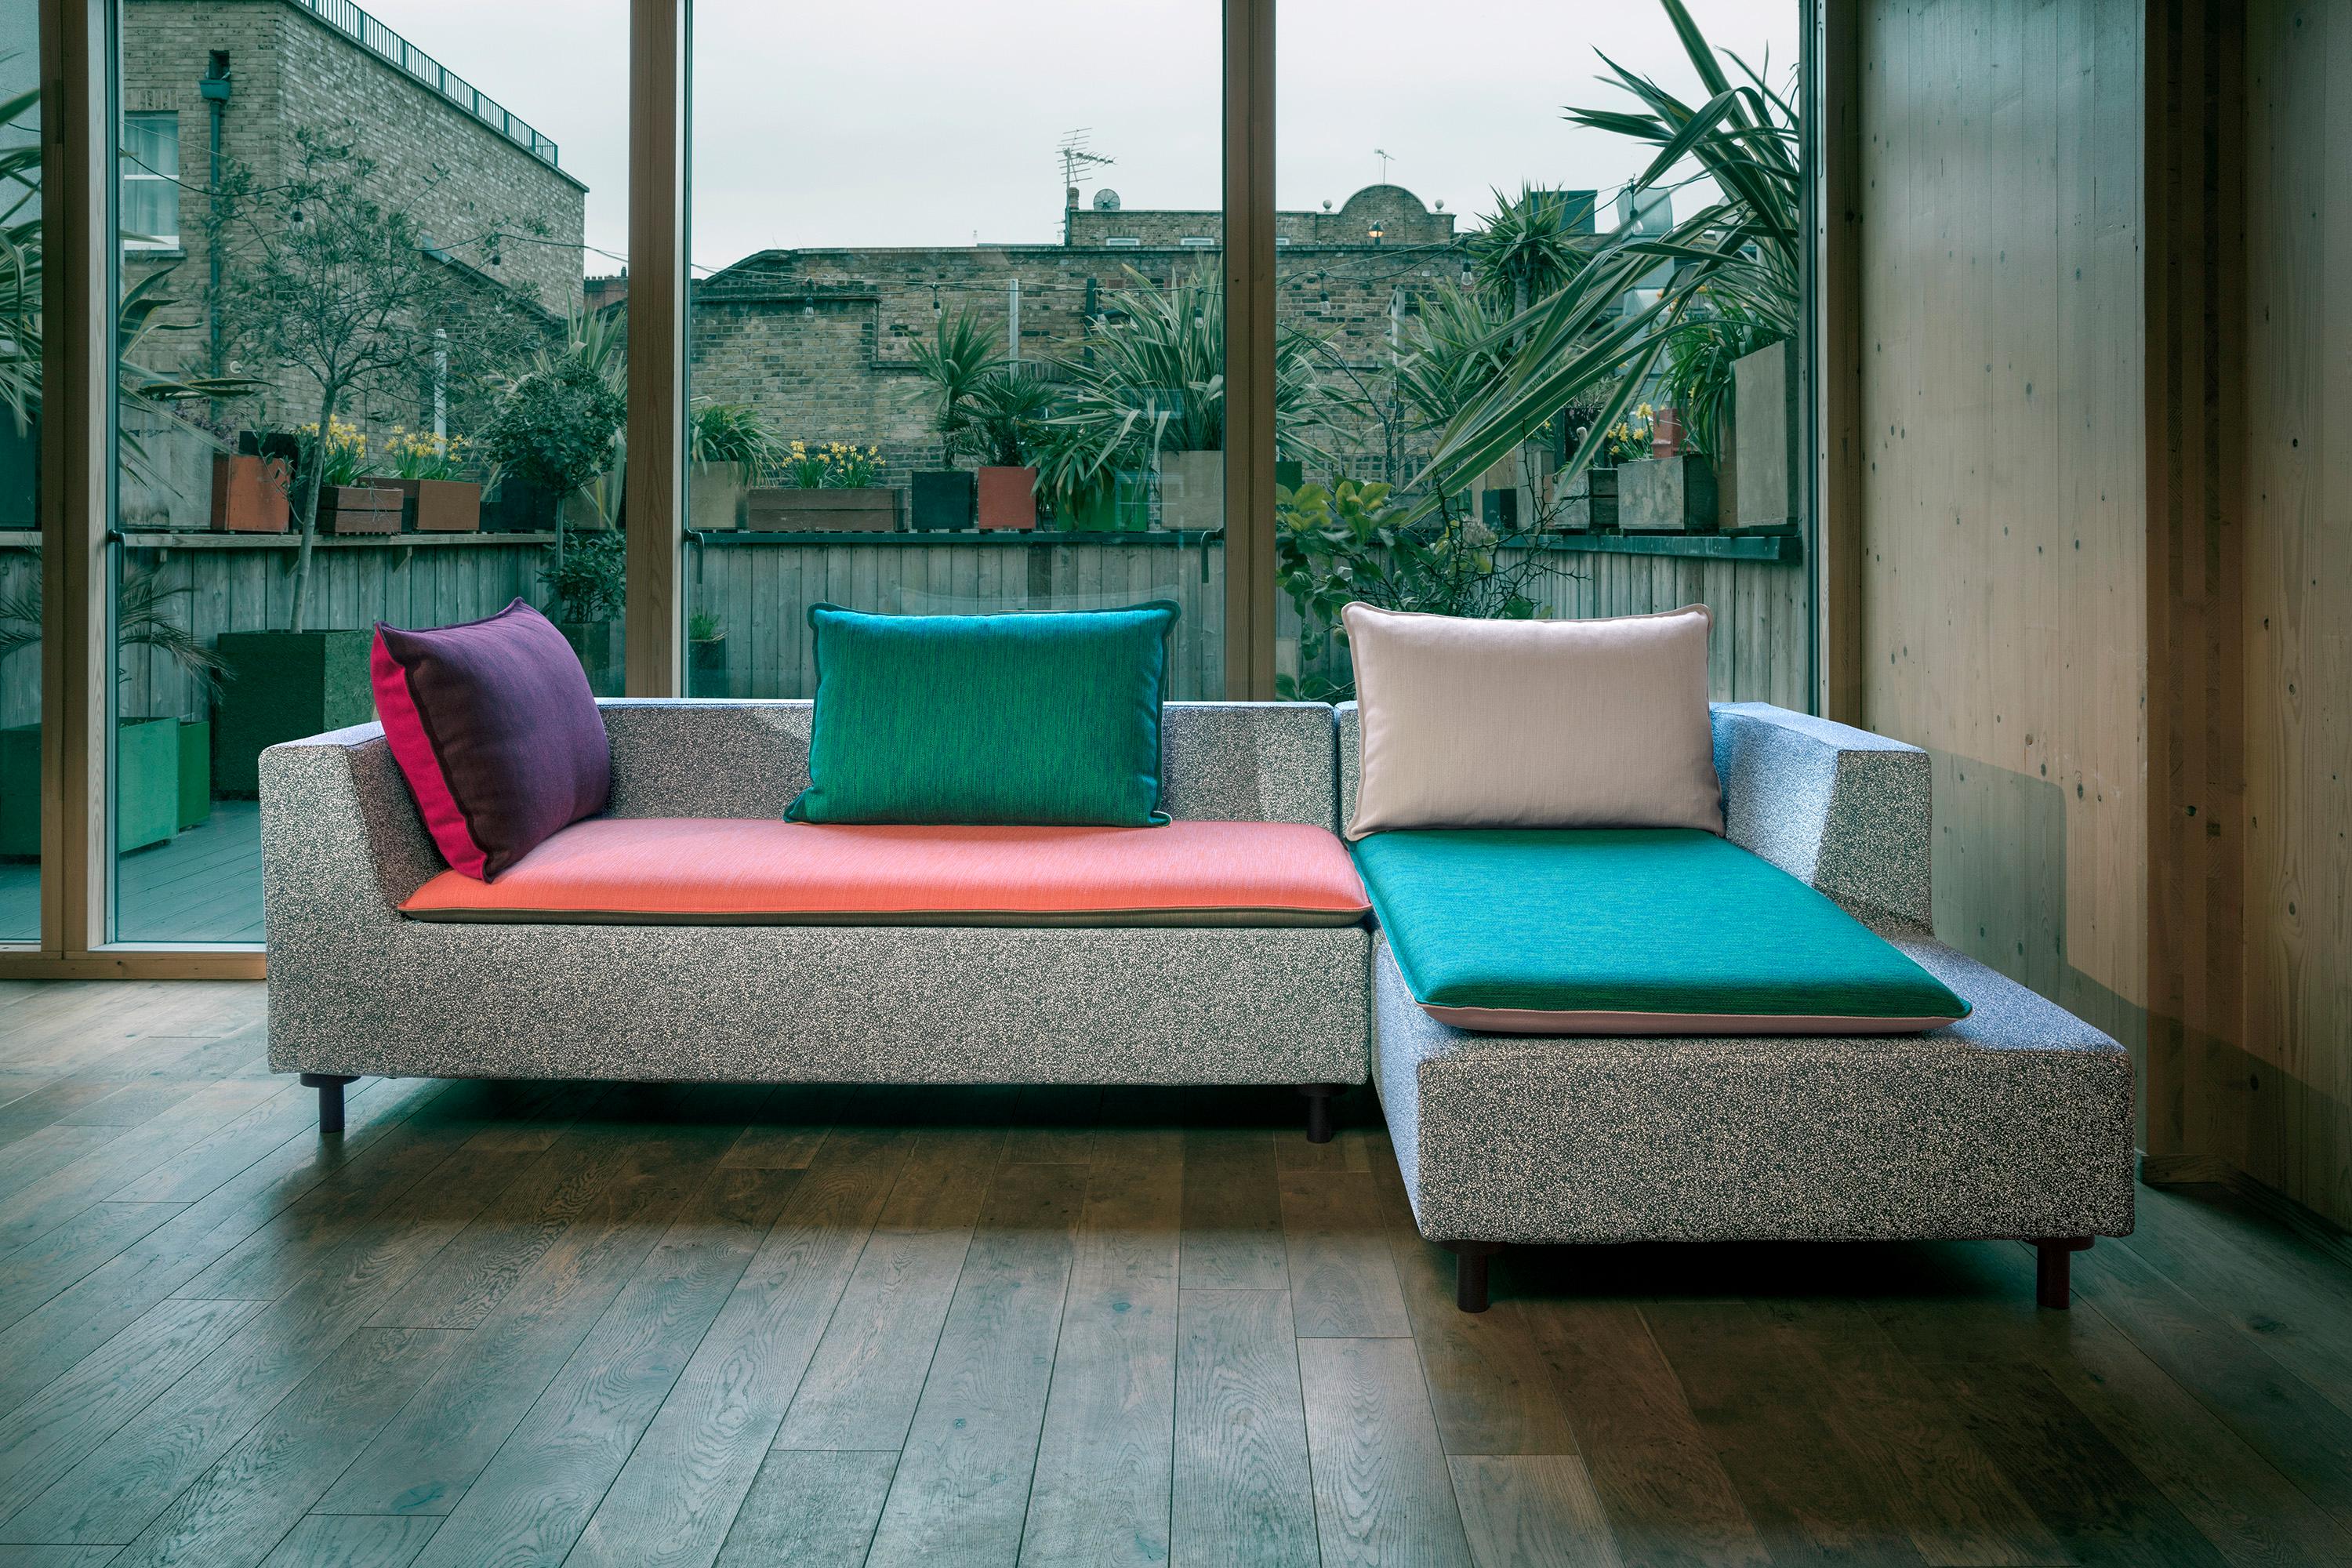 Konstantin Grcic a créé un divan compact et géométrique à la forme pure et à la personnalité affirmée qui offre une mise à jour moderne et minimaliste de la chaise traditionnelle. Le design compact comble un espace entre un canapé et un lit de jour